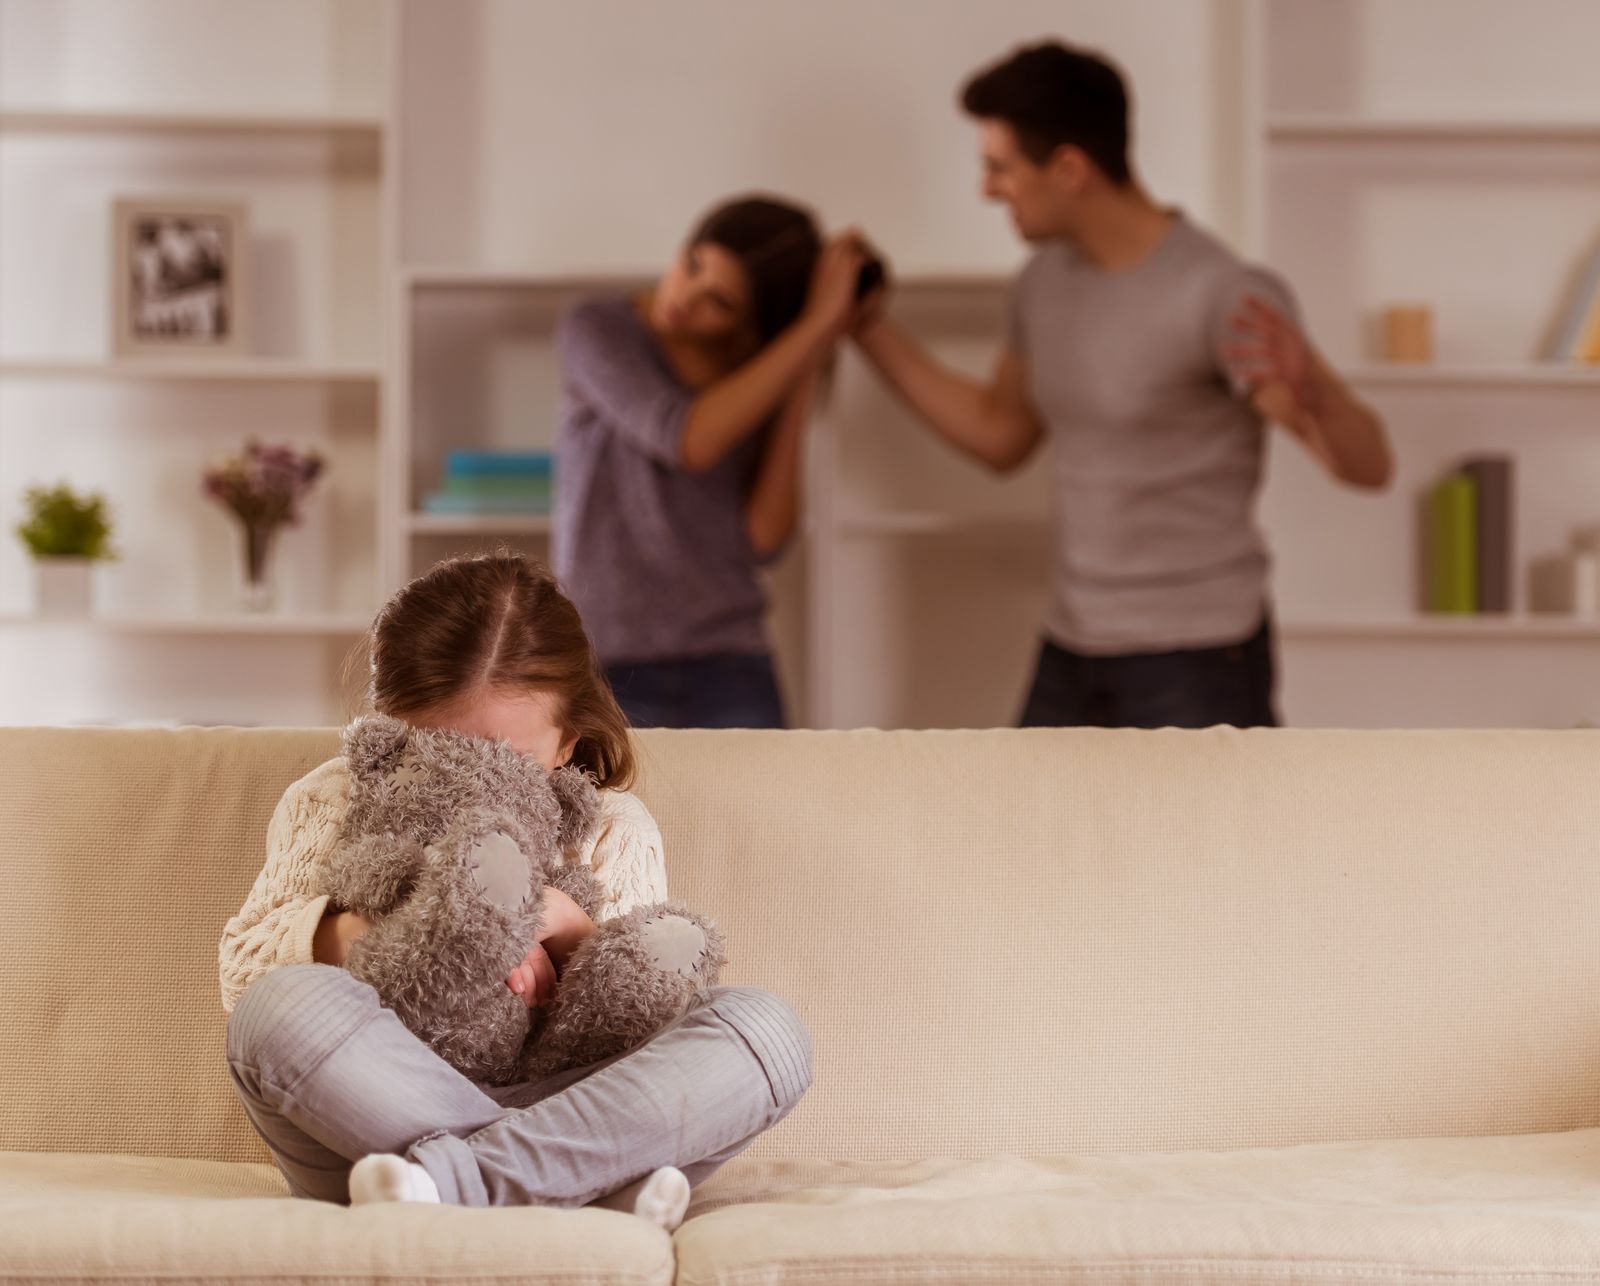 Děti násilné chování v rodině nejvíce odnášejí